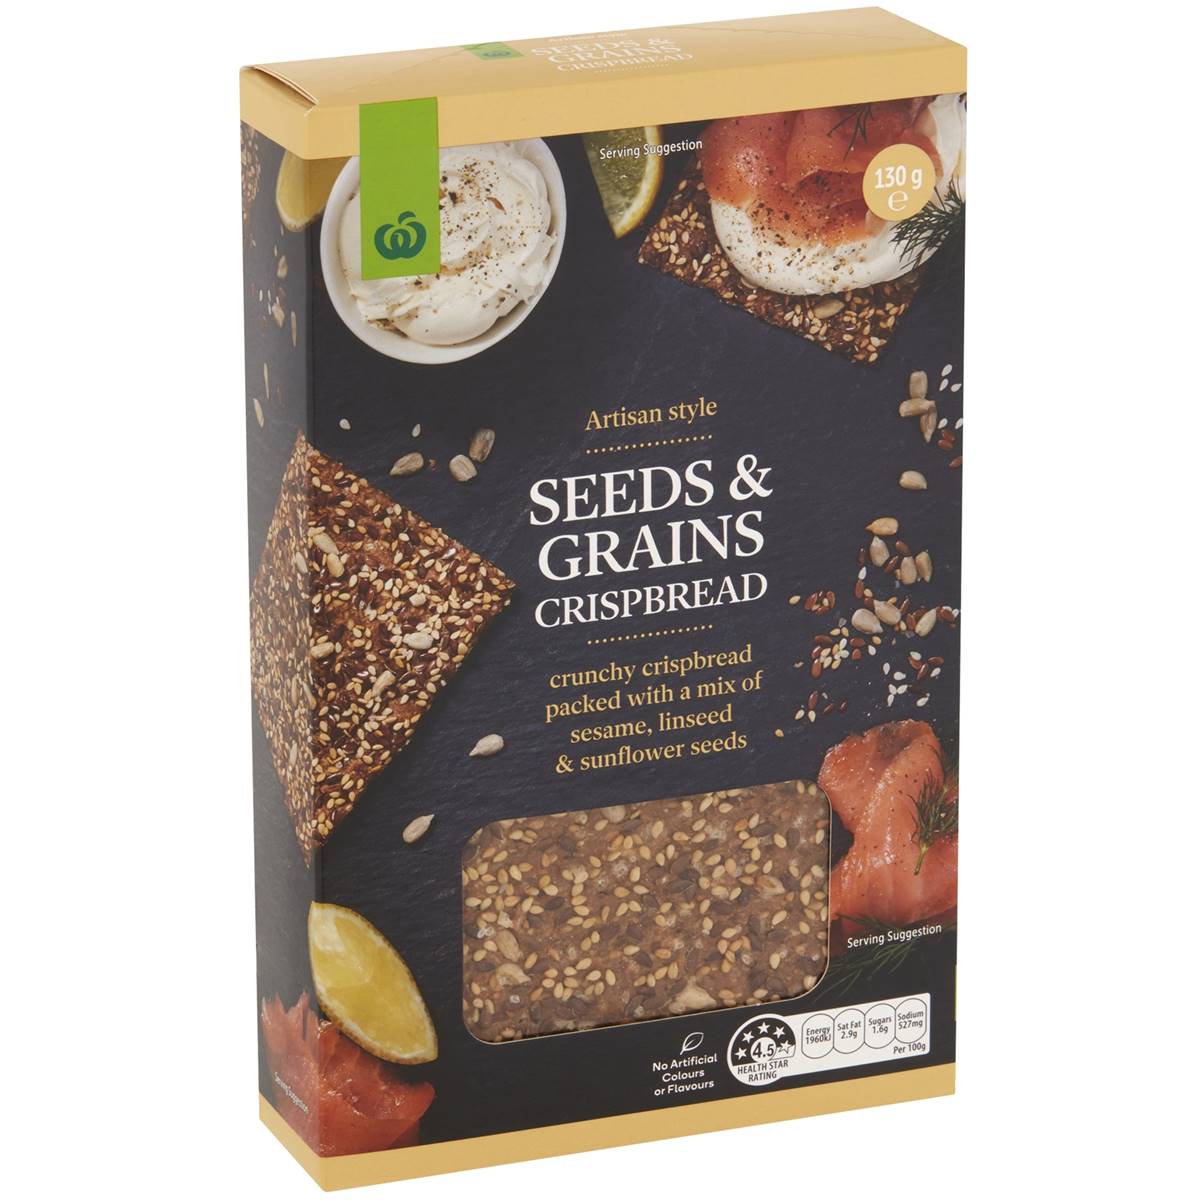 Calories in Woolworths Artisan Style Seeds & Grains Crispbread